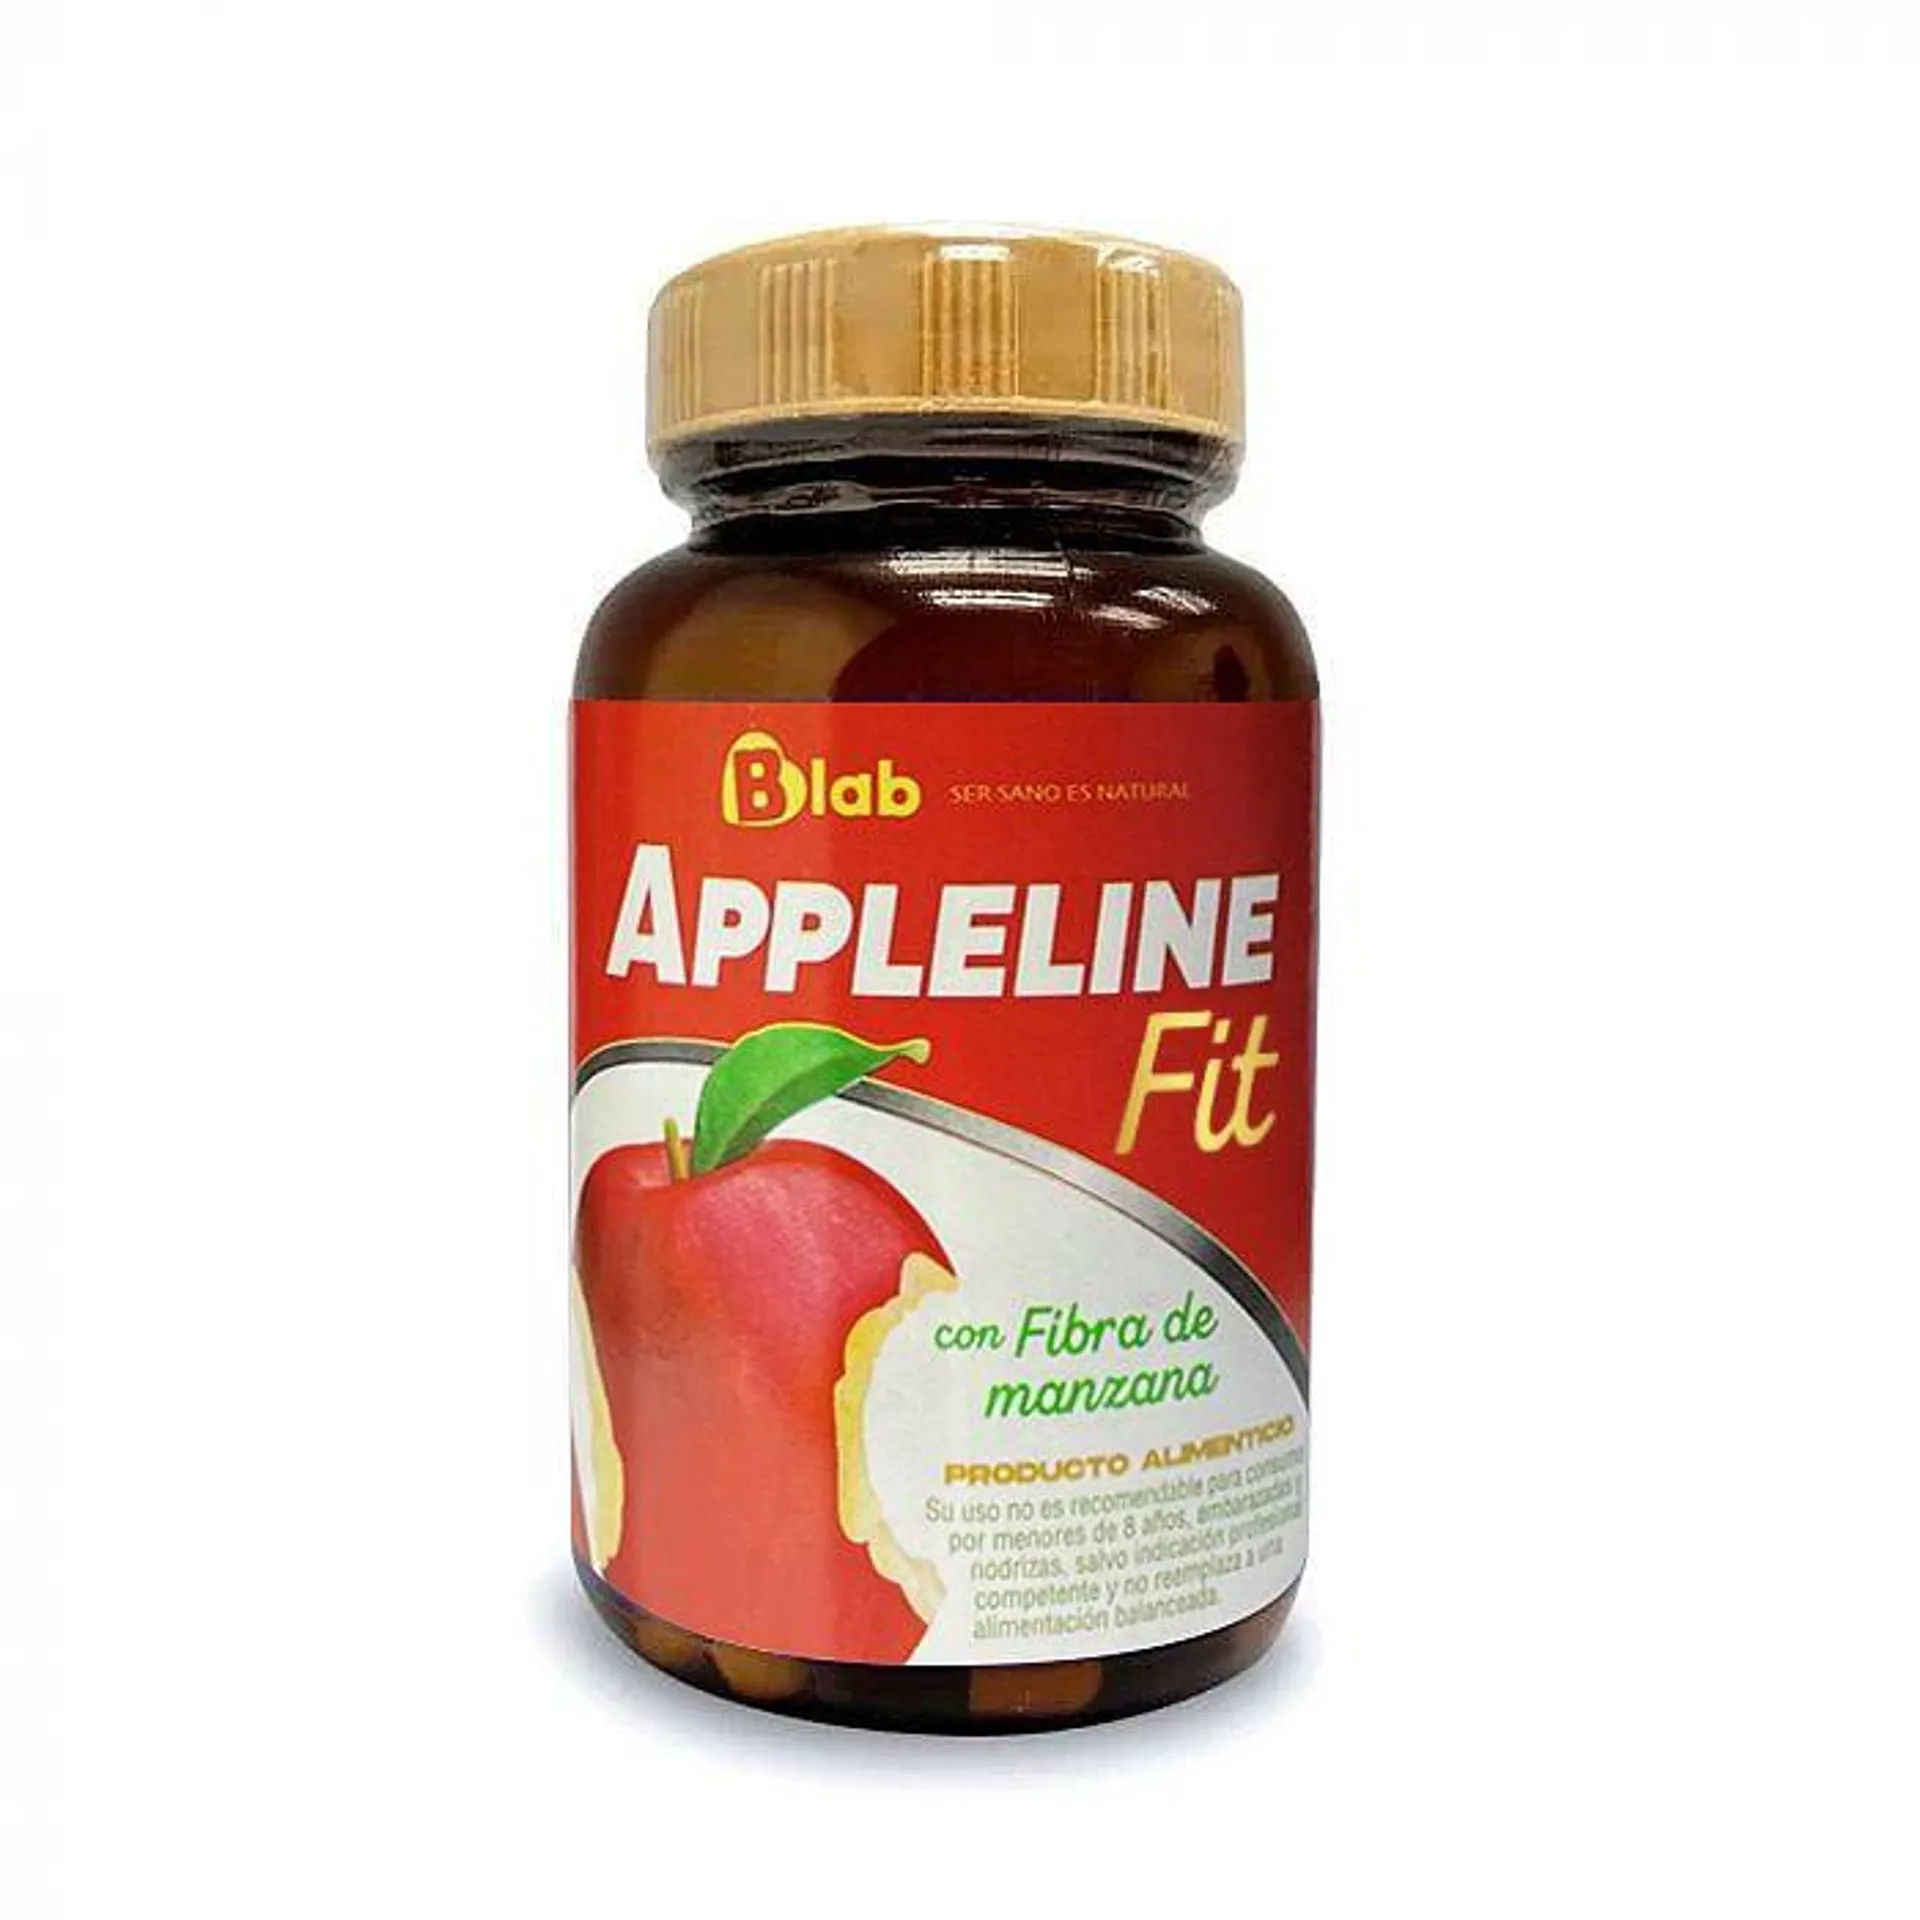 Vinagre de manzana con Lactobacilos Appleline